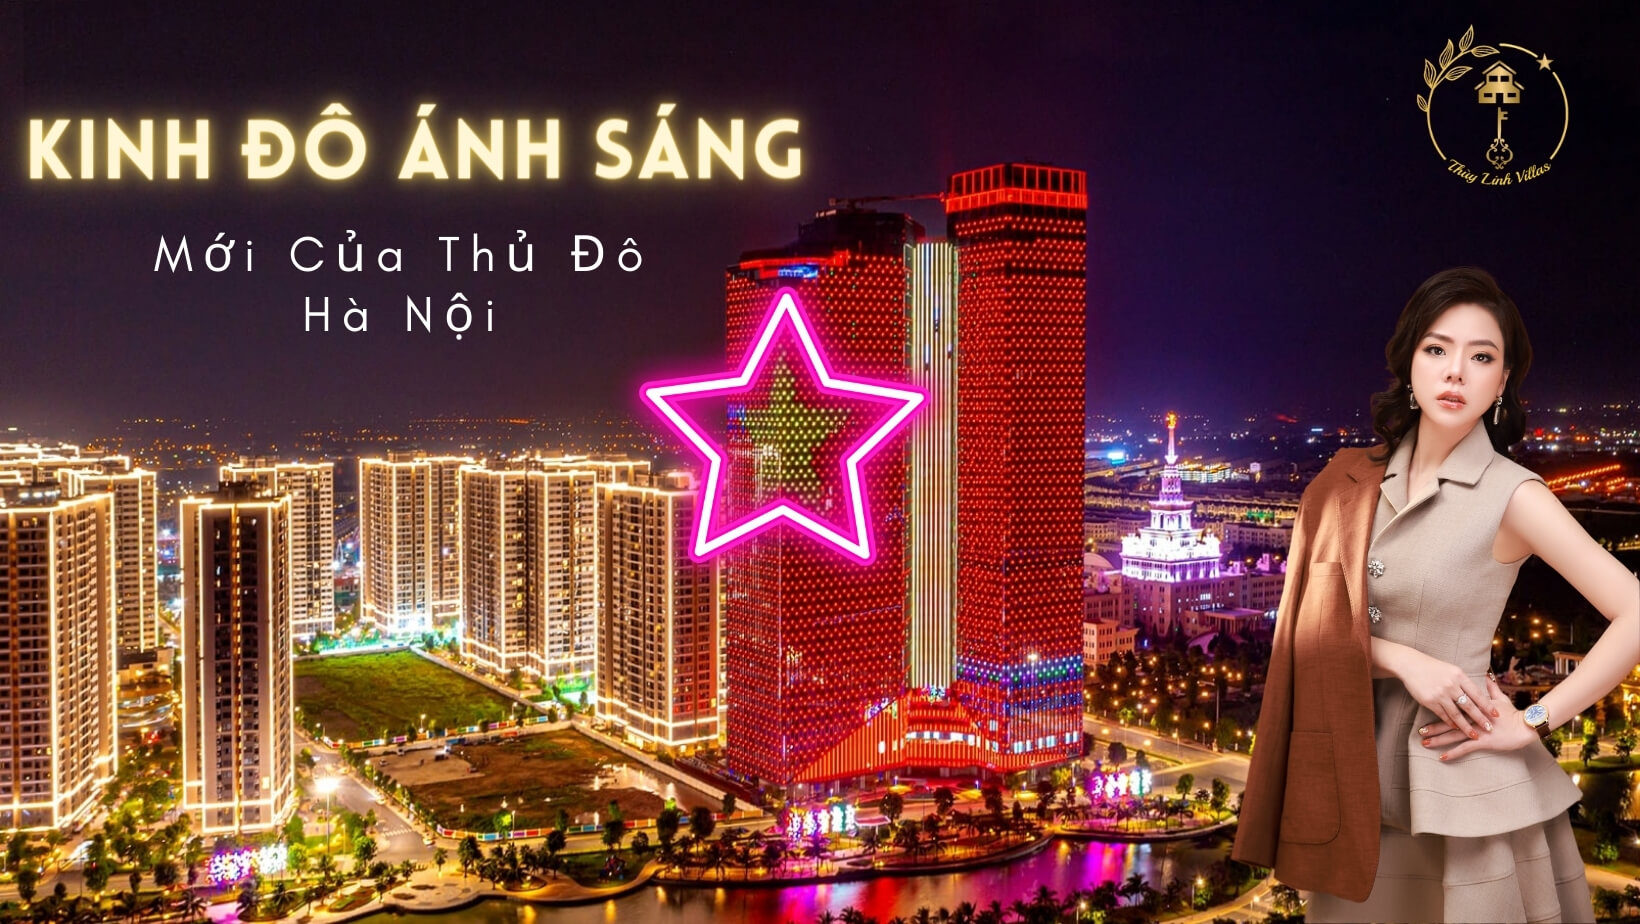 Kinh đô ánh sáng mới của Hà Nội - Thuỳ Linh Villas 0935088888